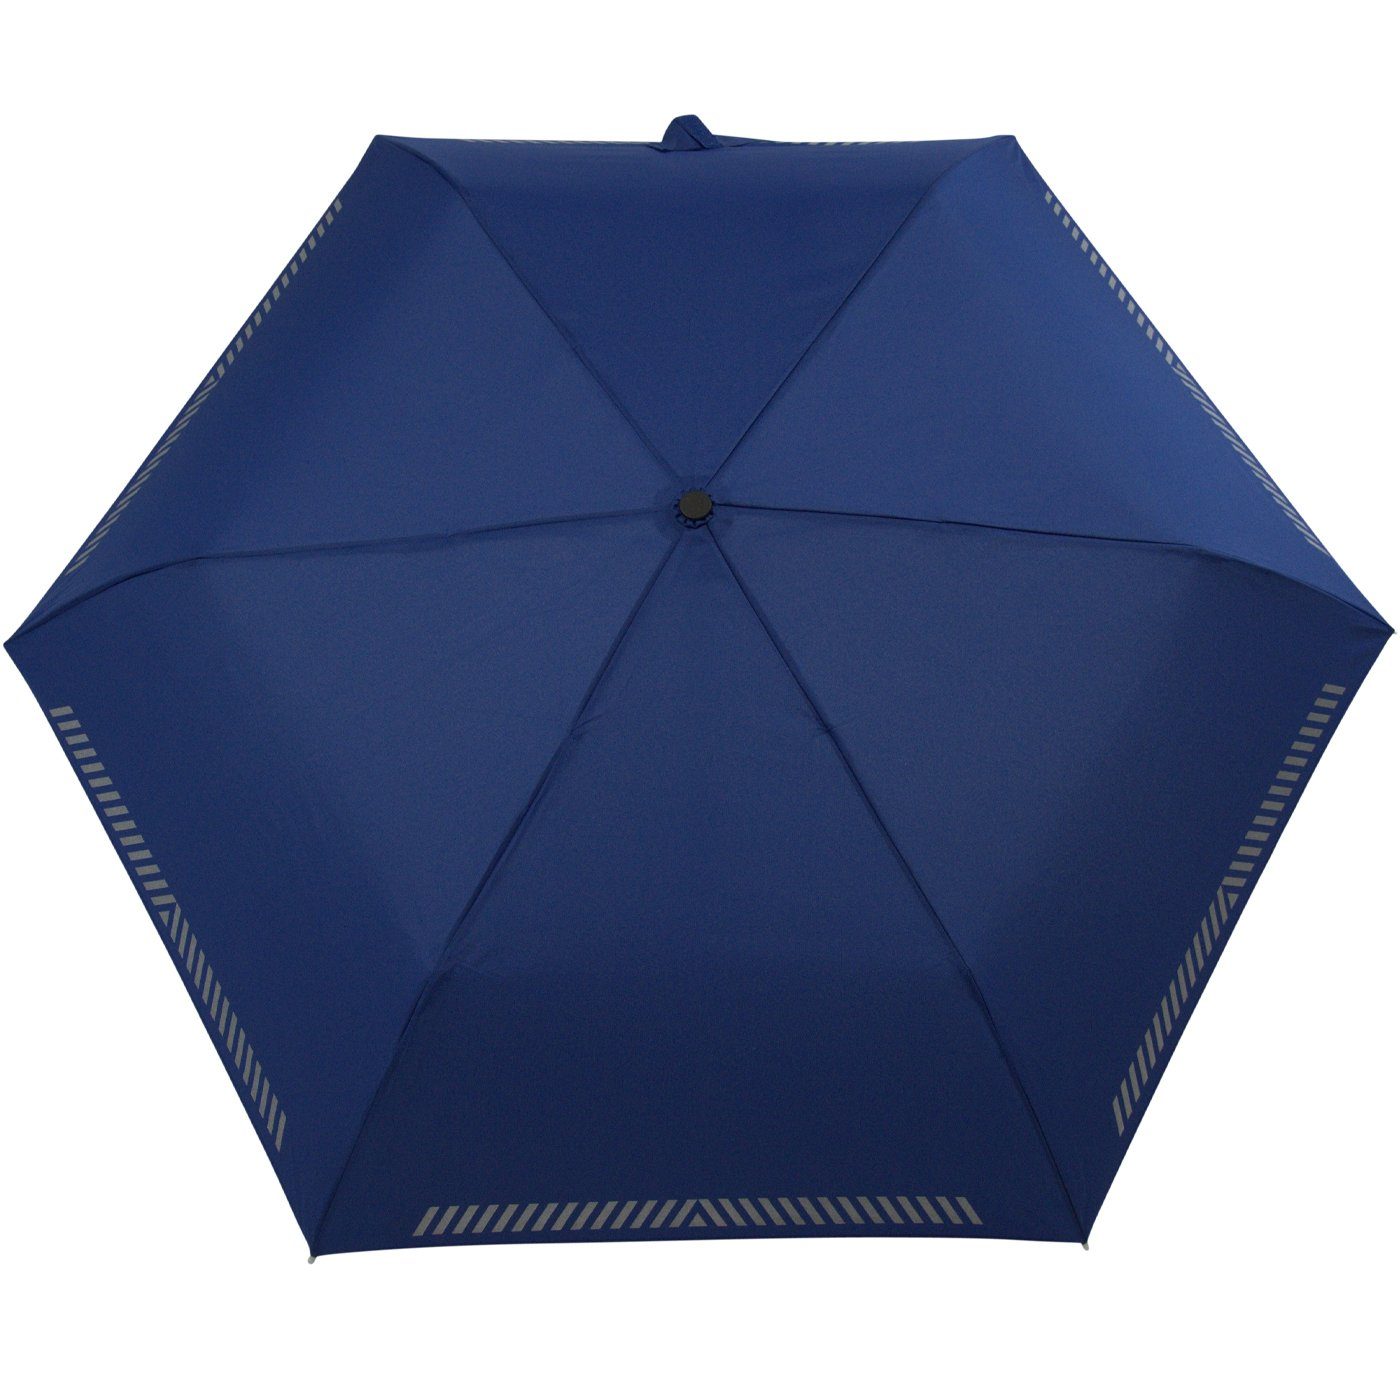 blau - Taschenregenschirm mit Sicherheit durch Kinderschirm reflektierend, Auf-Zu-Automatik, Reflex-Streifen iX-brella